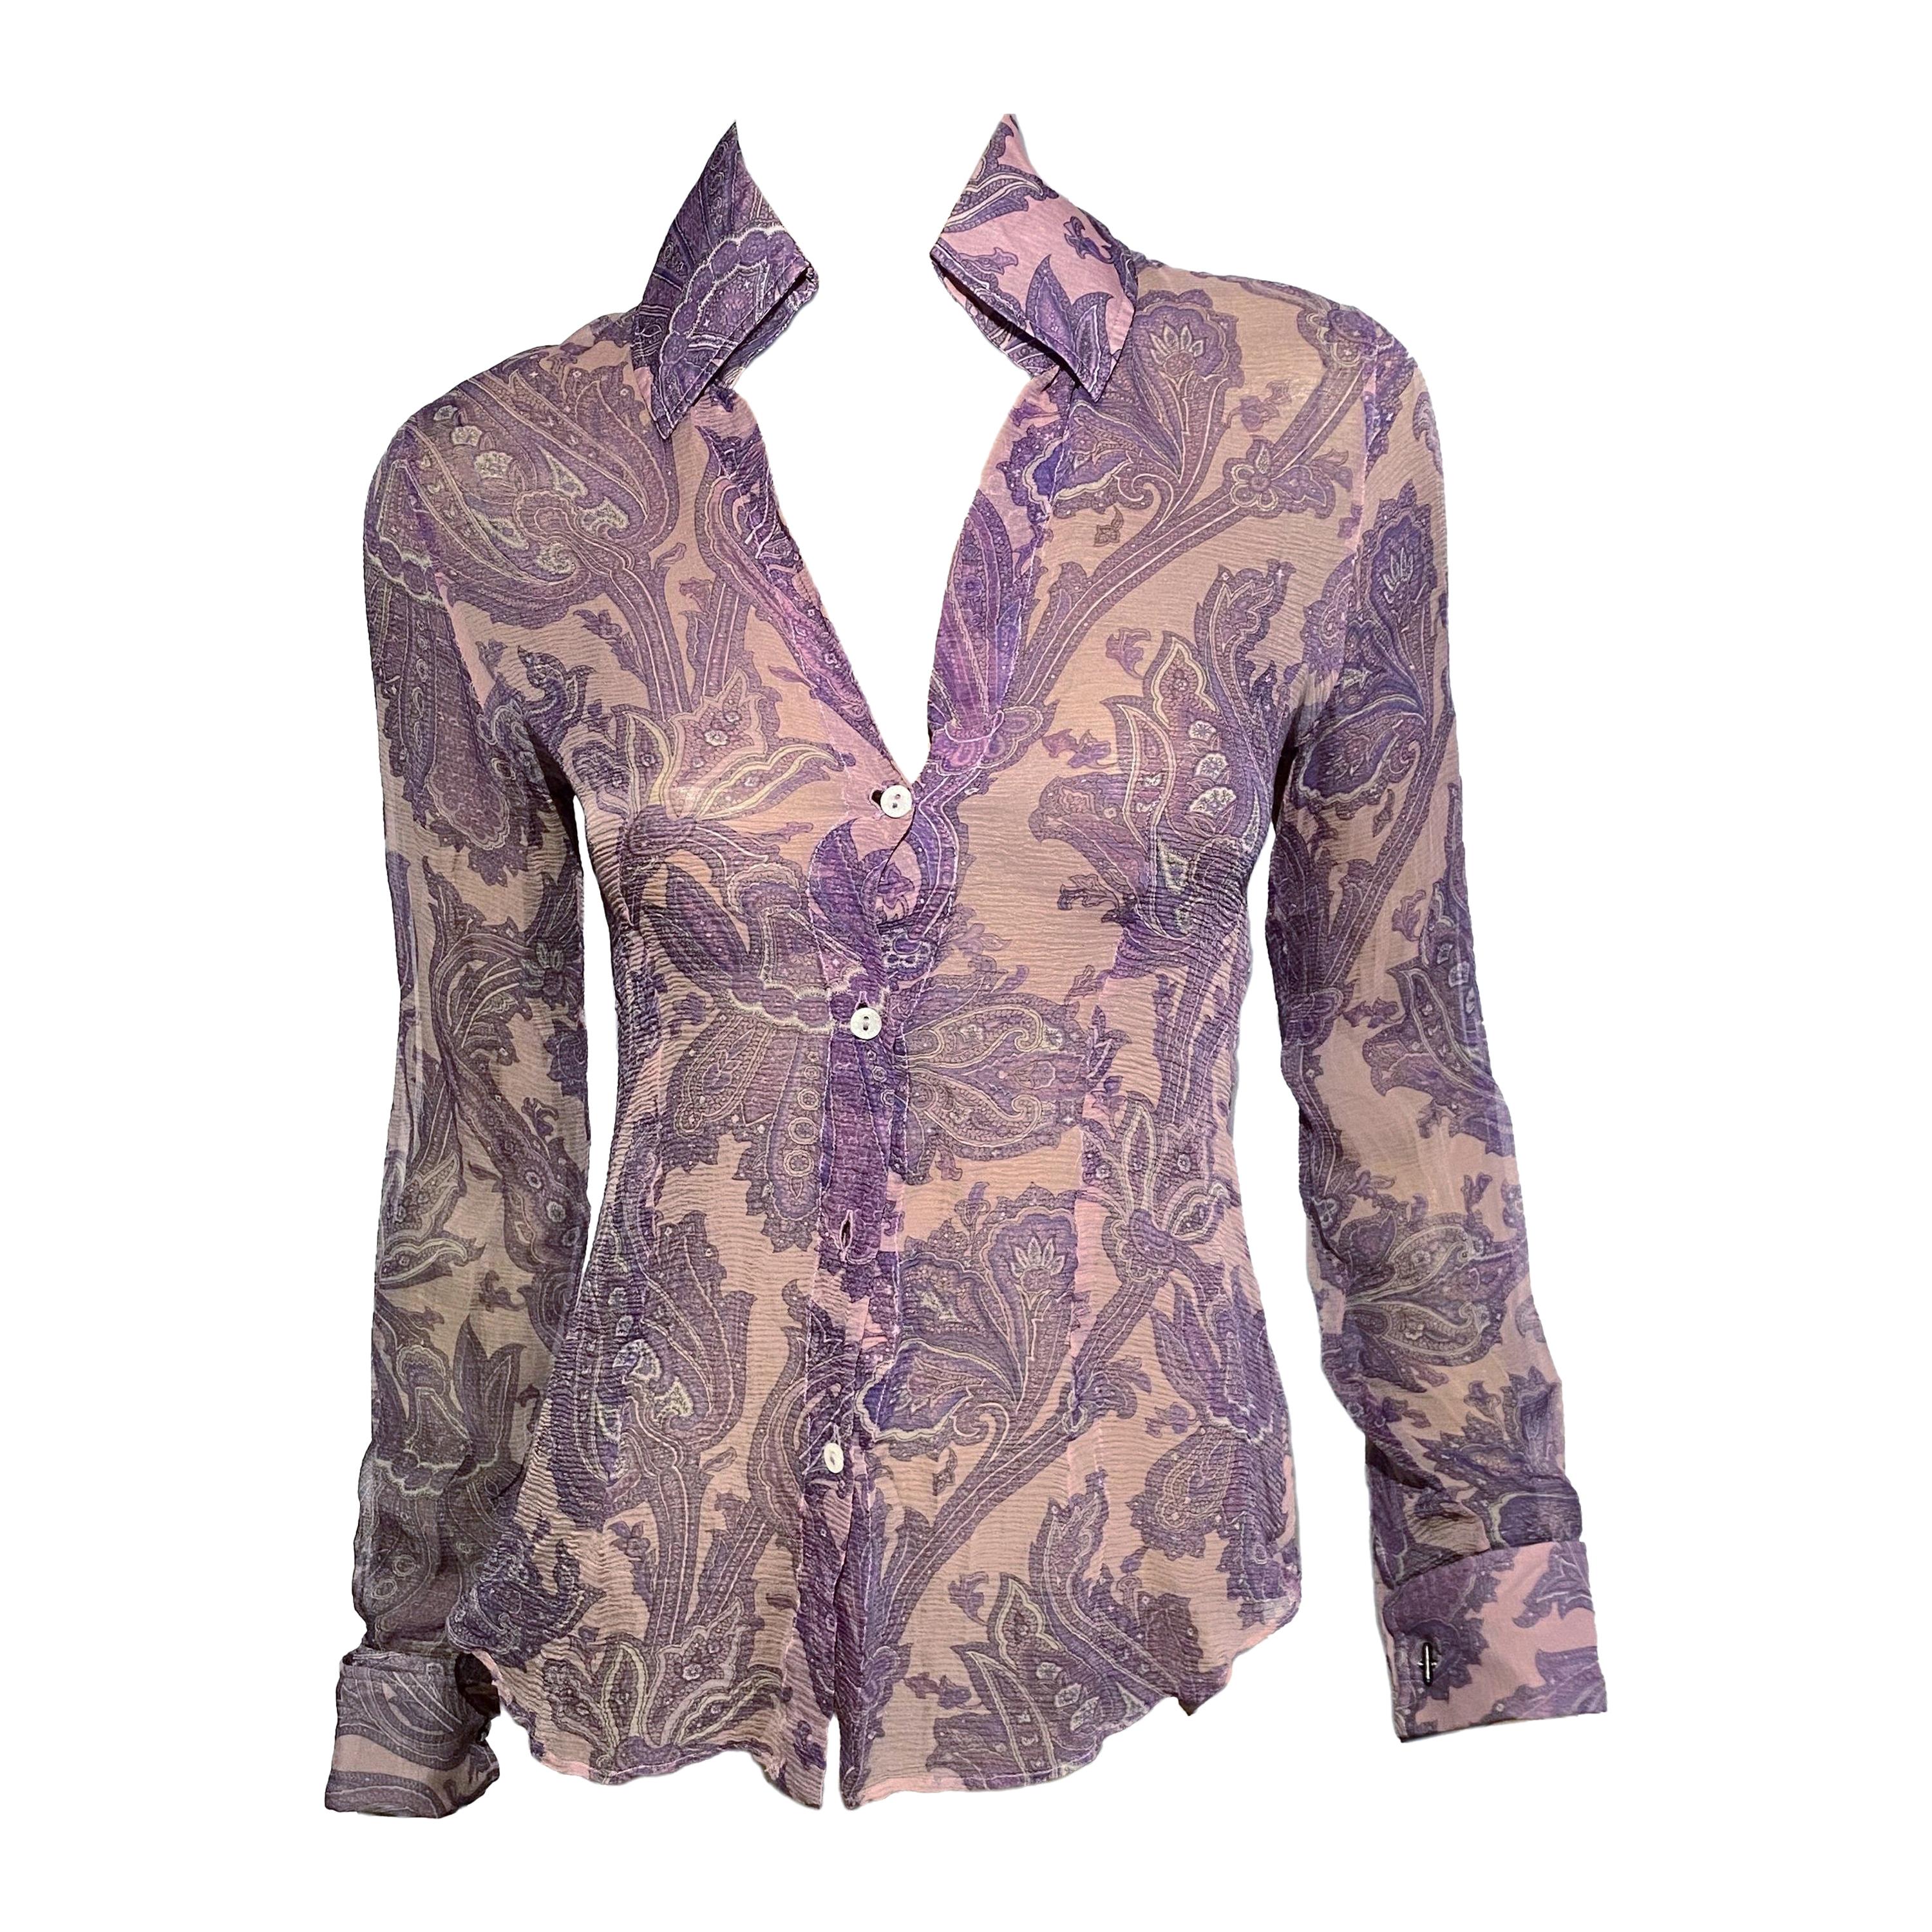 Dolce & Gabbana S/S 2000 “Mix & Match” Purple Paisley Shirt